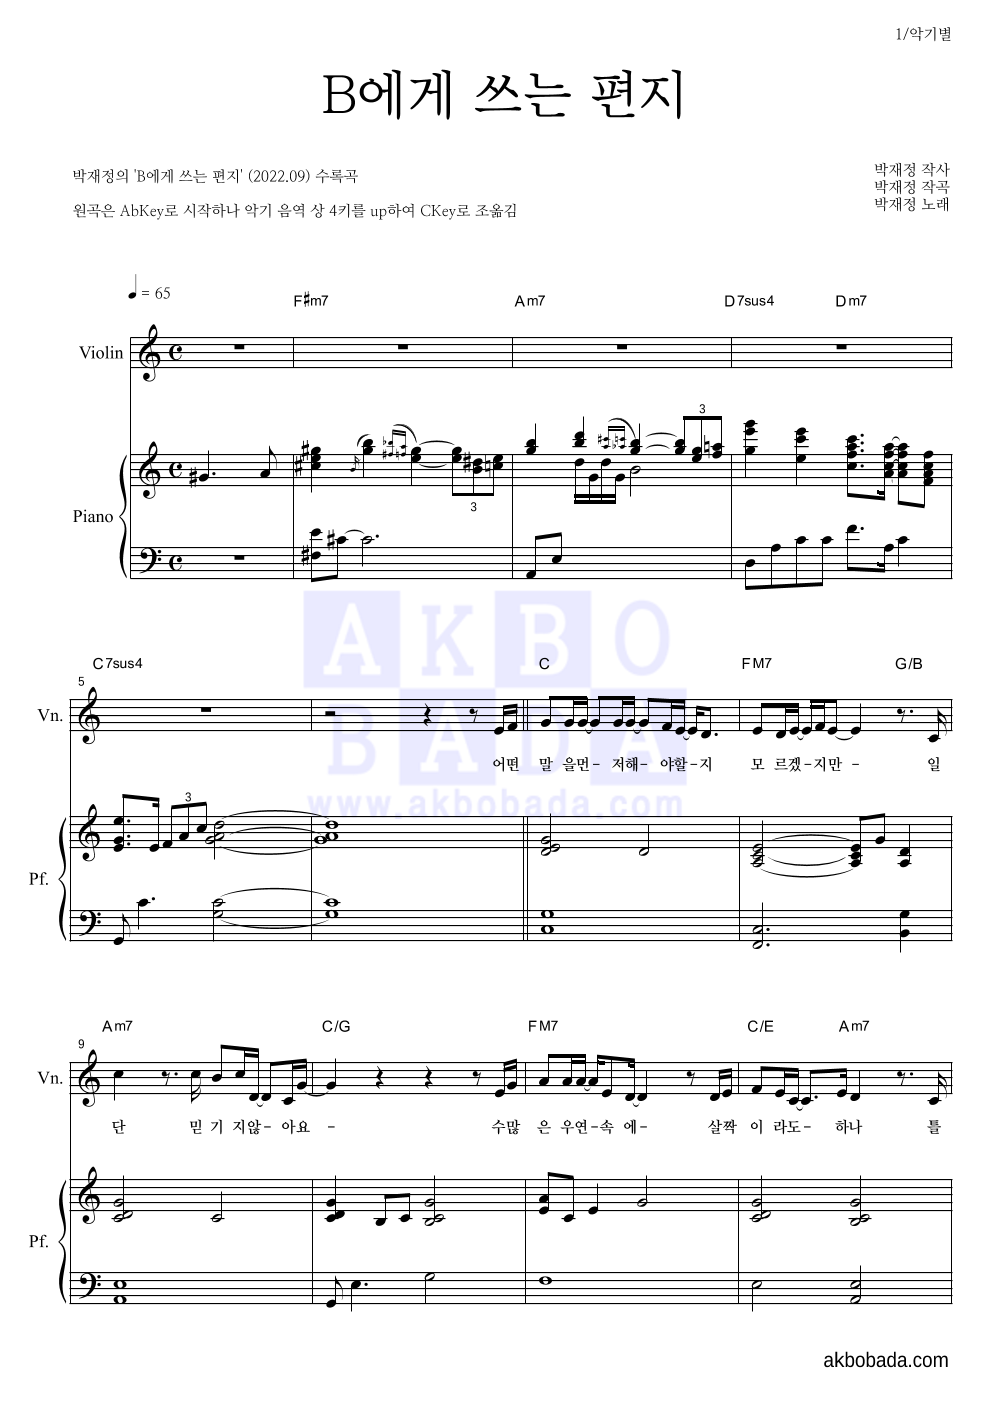 박재정 - B에게 쓰는 편지 바이올린&피아노 악보 